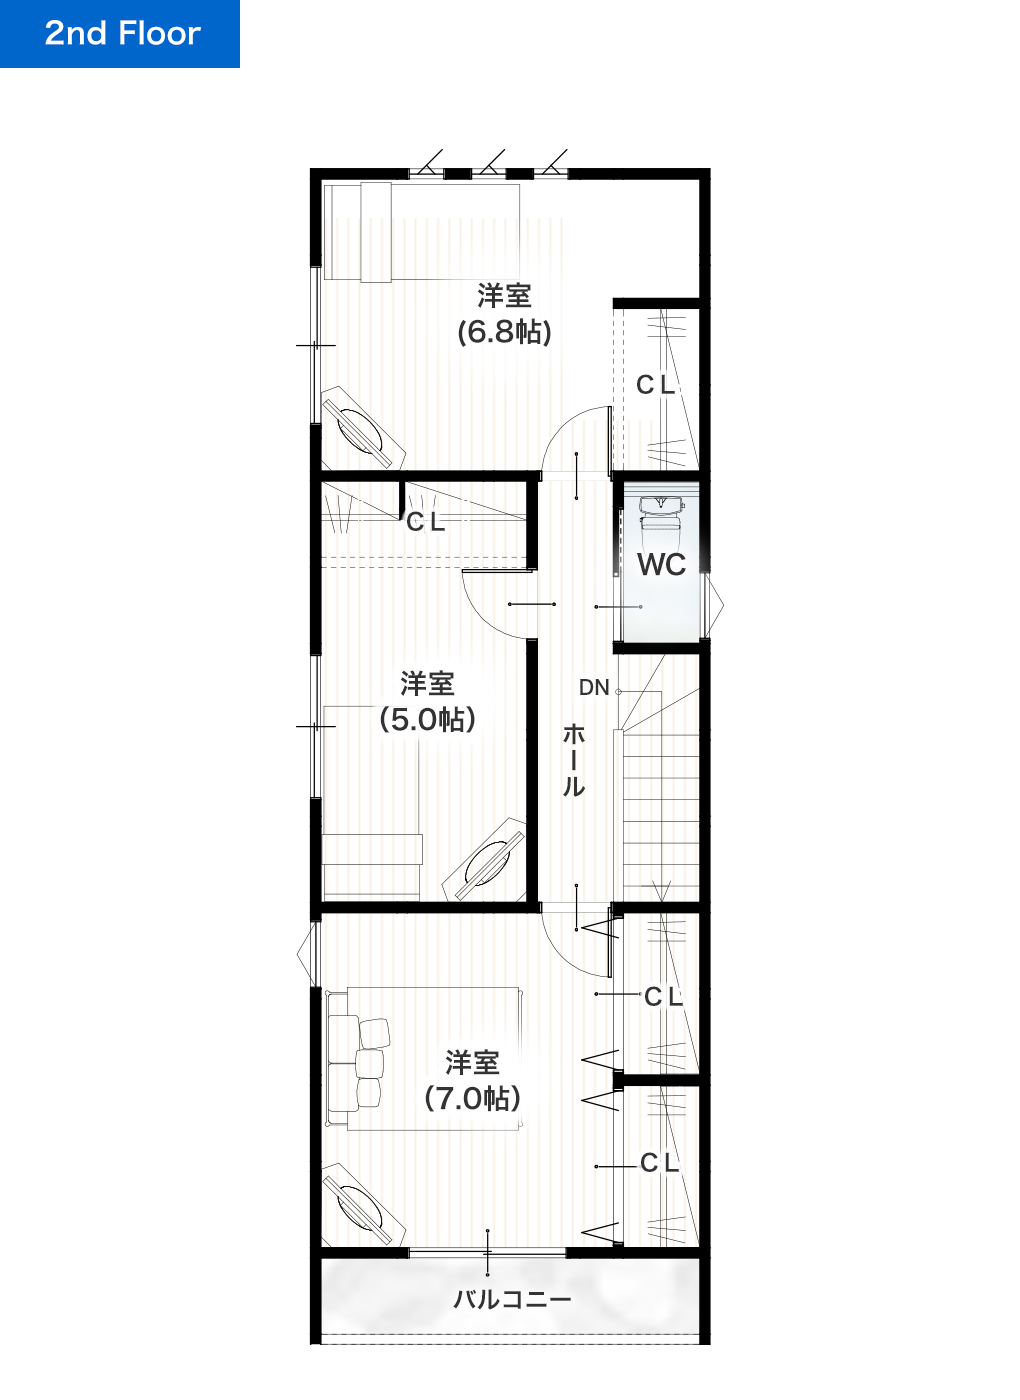 熊本市西区野中2丁目5号地 28坪 3LDK 建売・一戸建ての新築物件 2階間取り図